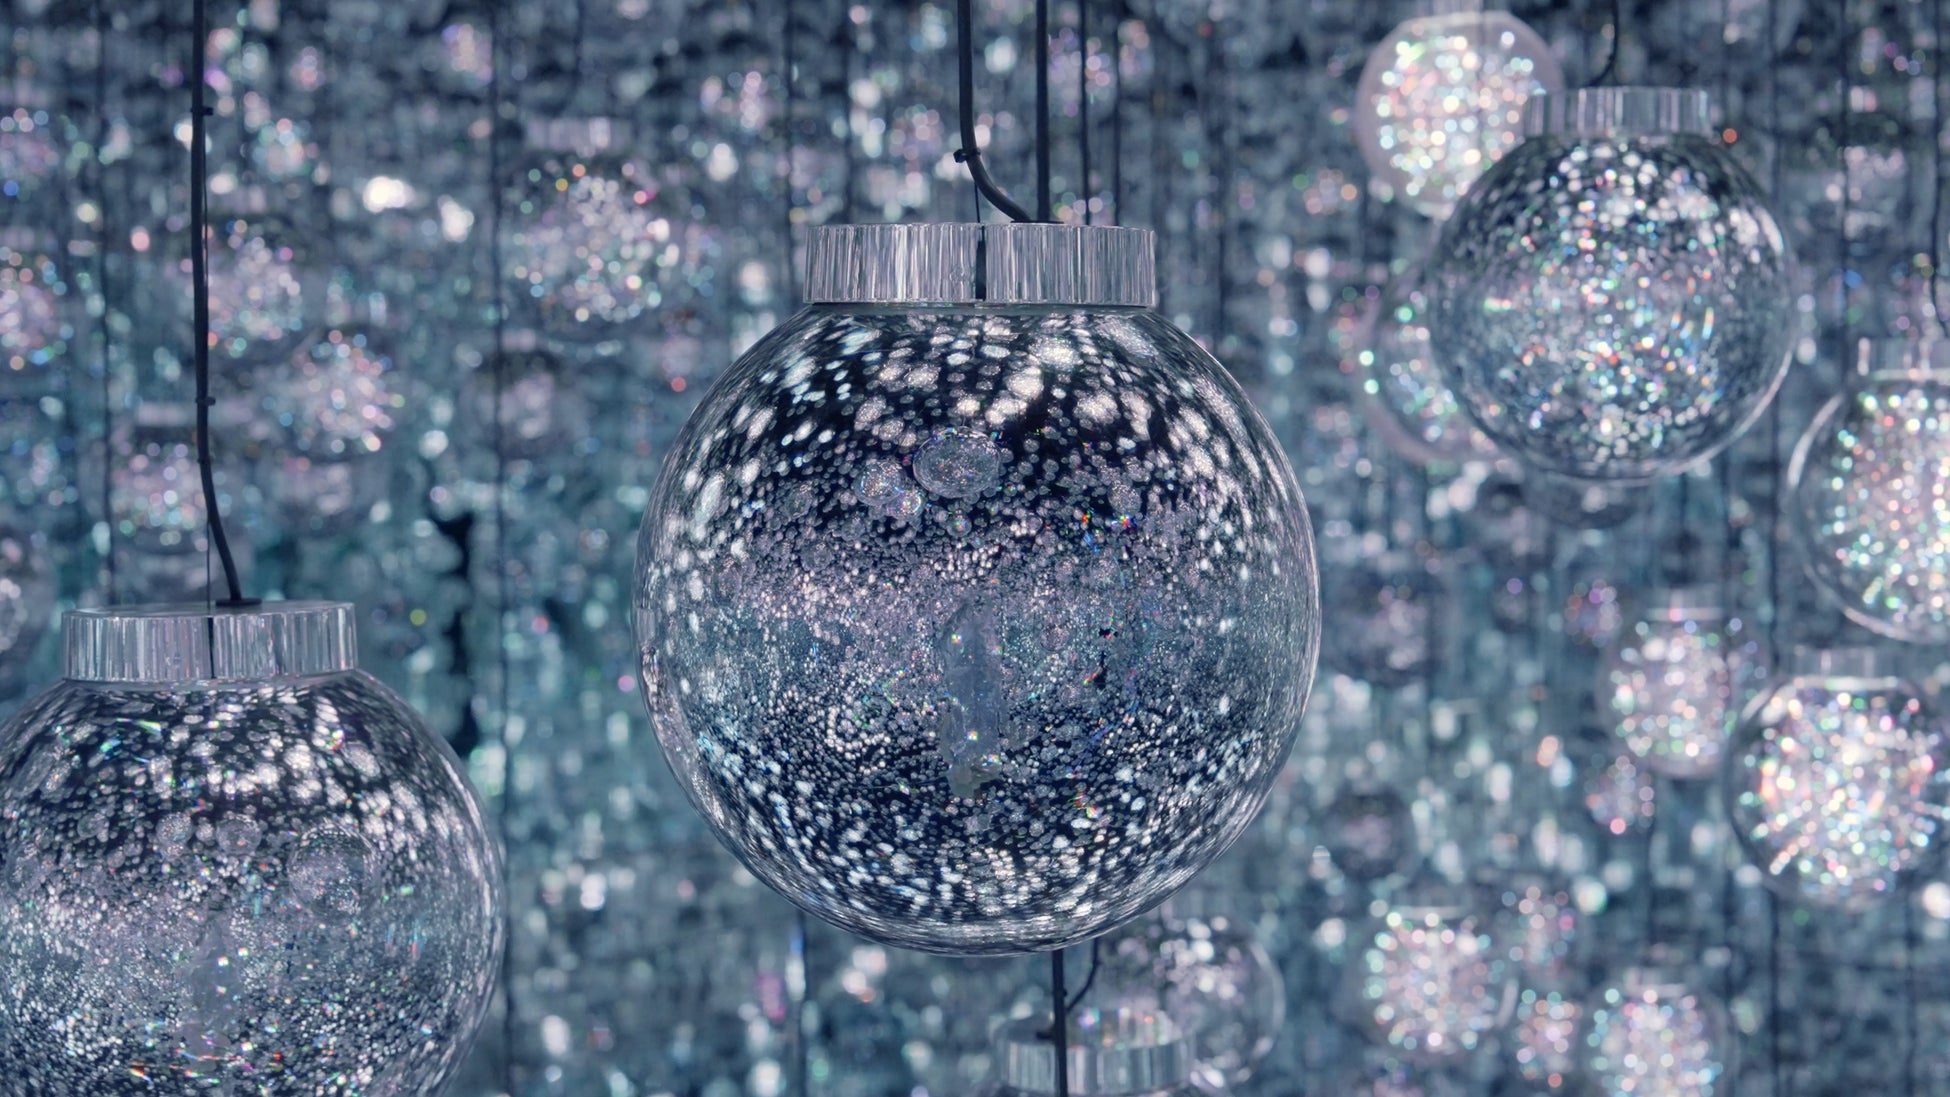 環境によって生み出される光／チームラボ《Bubble Universe：実体光、光のシャボン玉、ぷるんぷるんの光、環境によって生み出される光 》© チームラボ